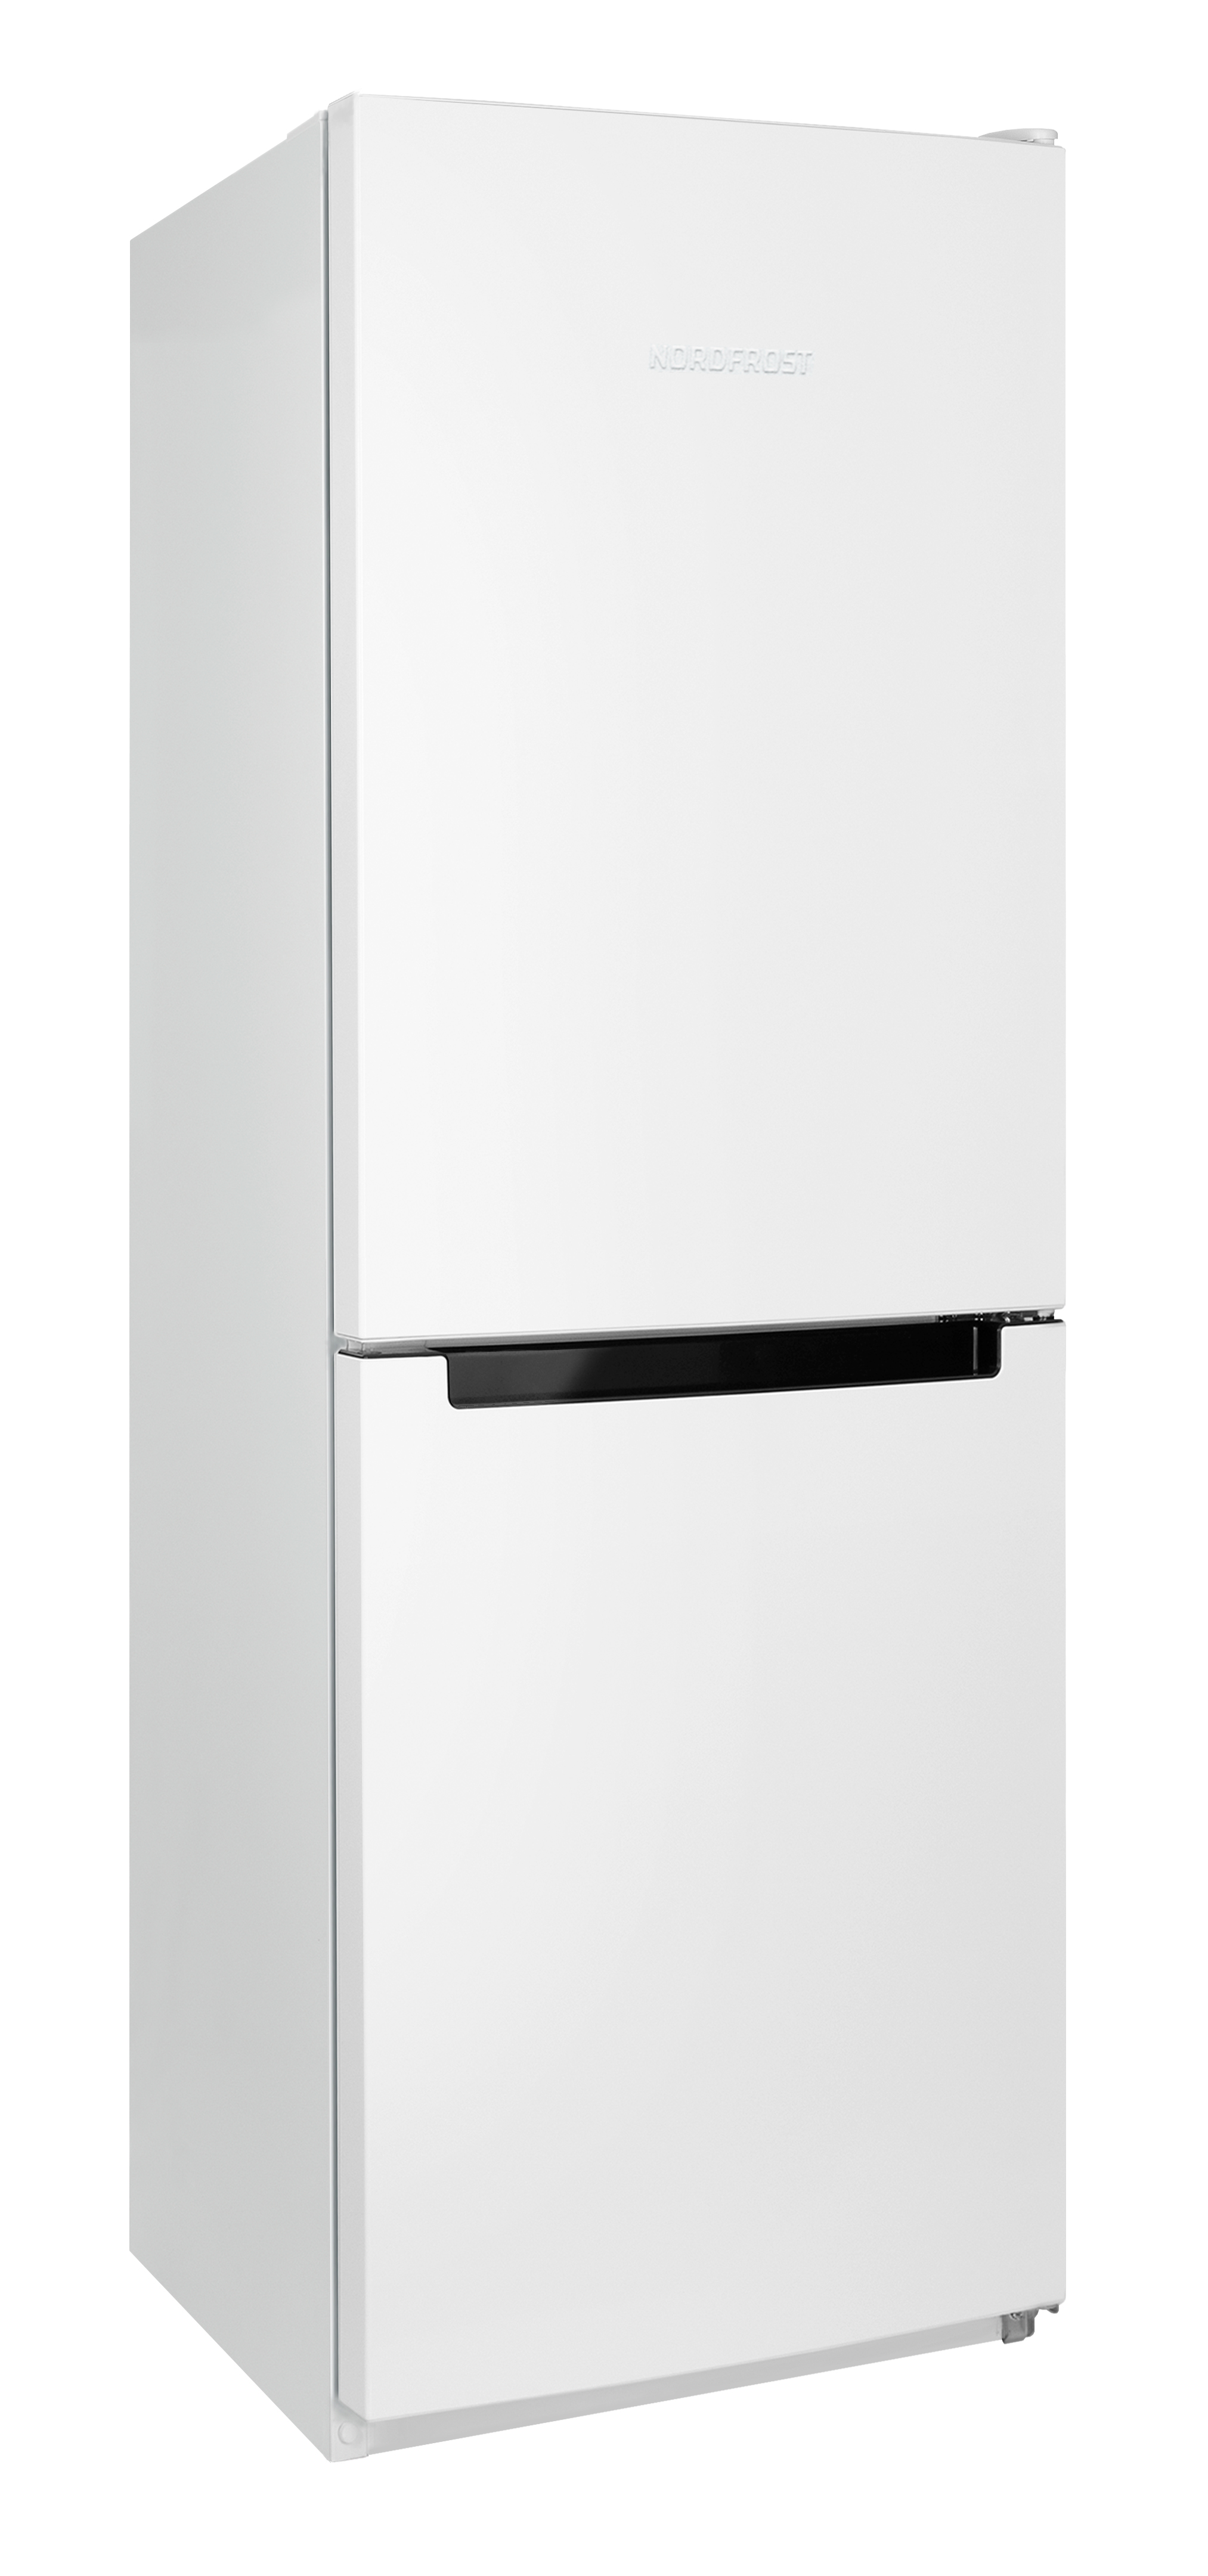 Холодильник NordFrost NRB 131 W белый холодильник nordfrost nrb 161nf w